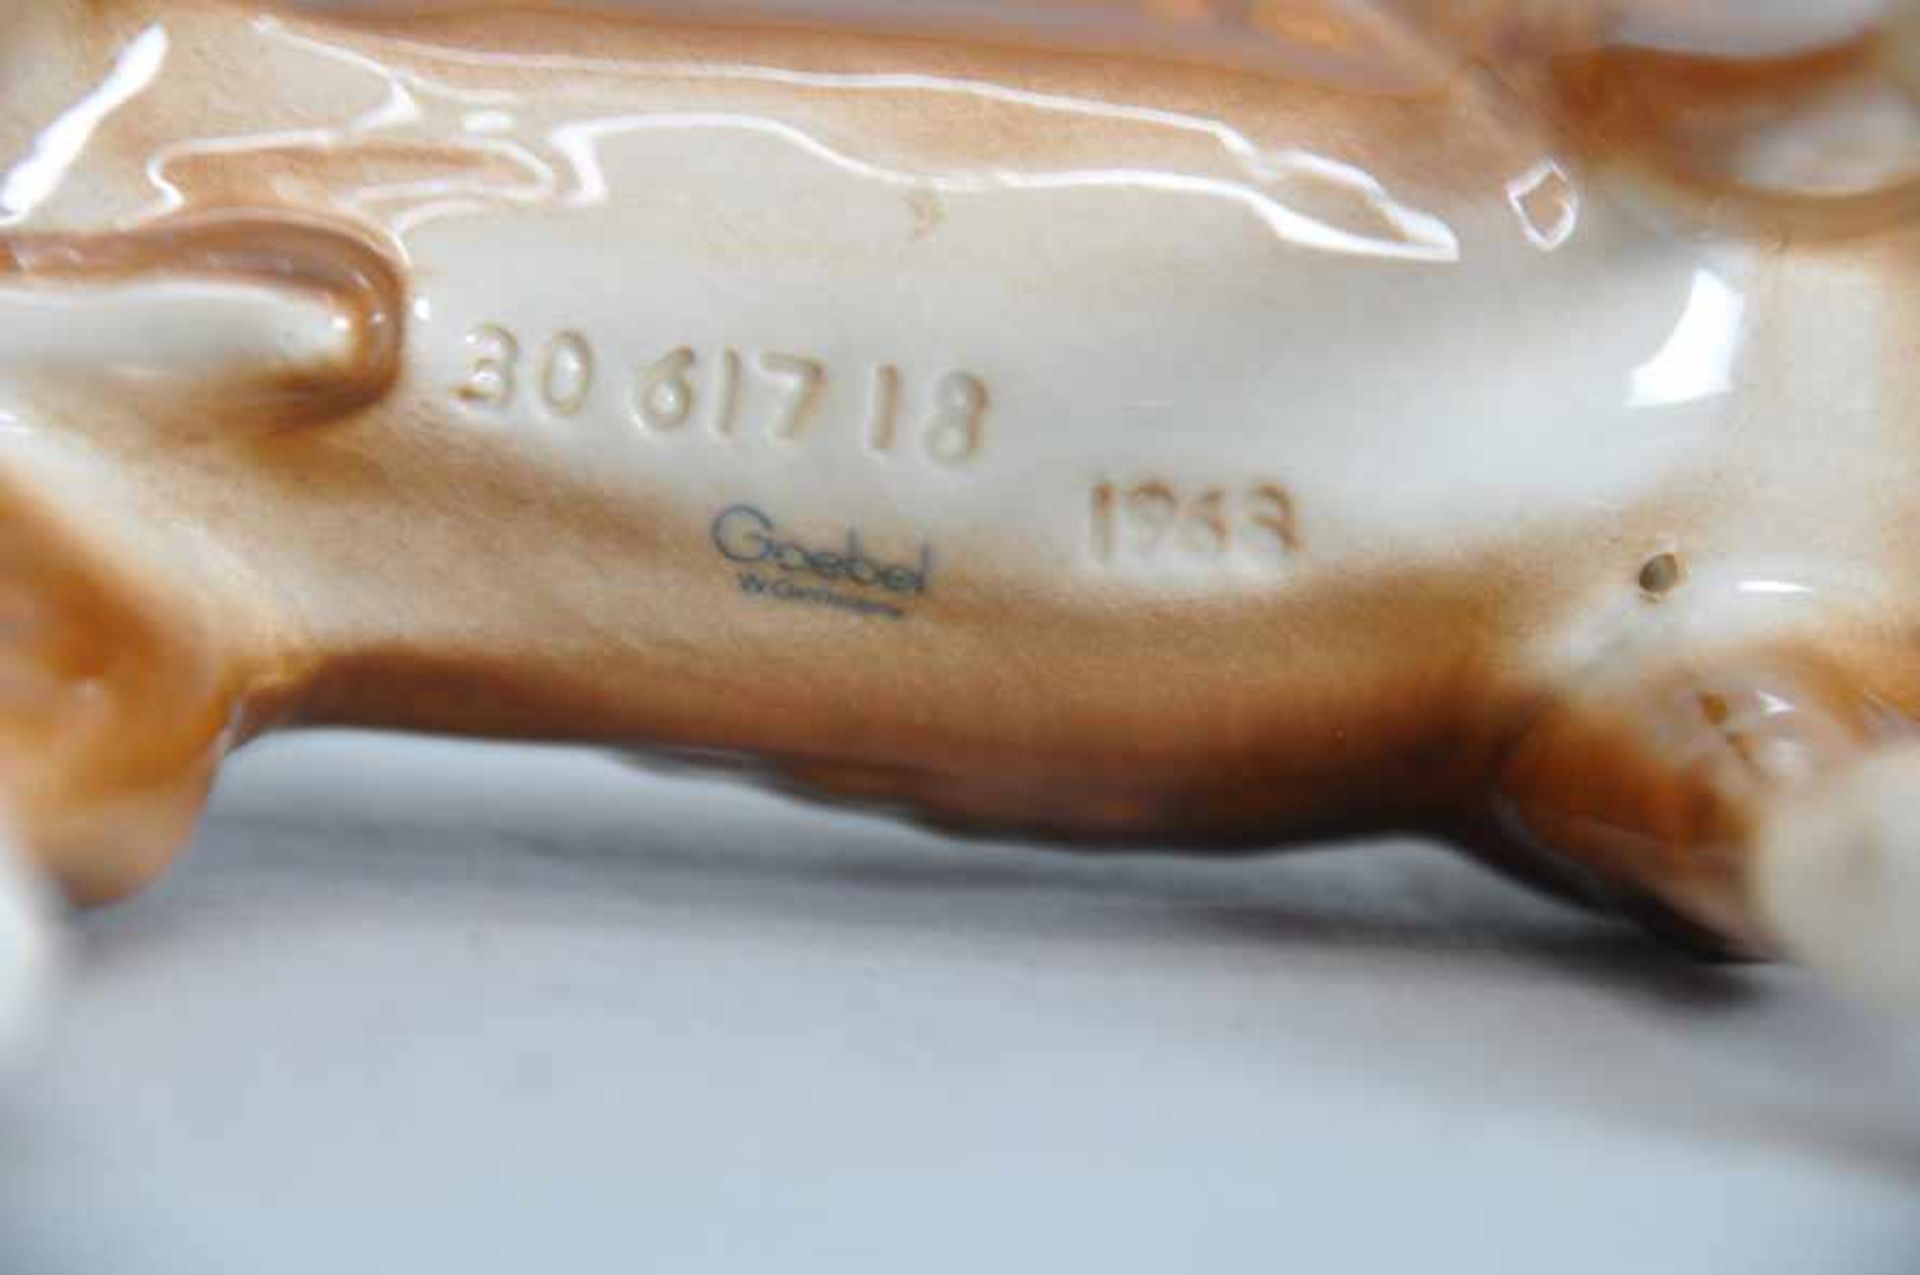 Boxer, Porzellanfigur, polychrom bemalt.Goebel, Modellnummer 3061718, Jahr 1968. Maße ca. 21 x 19 - Image 4 of 7